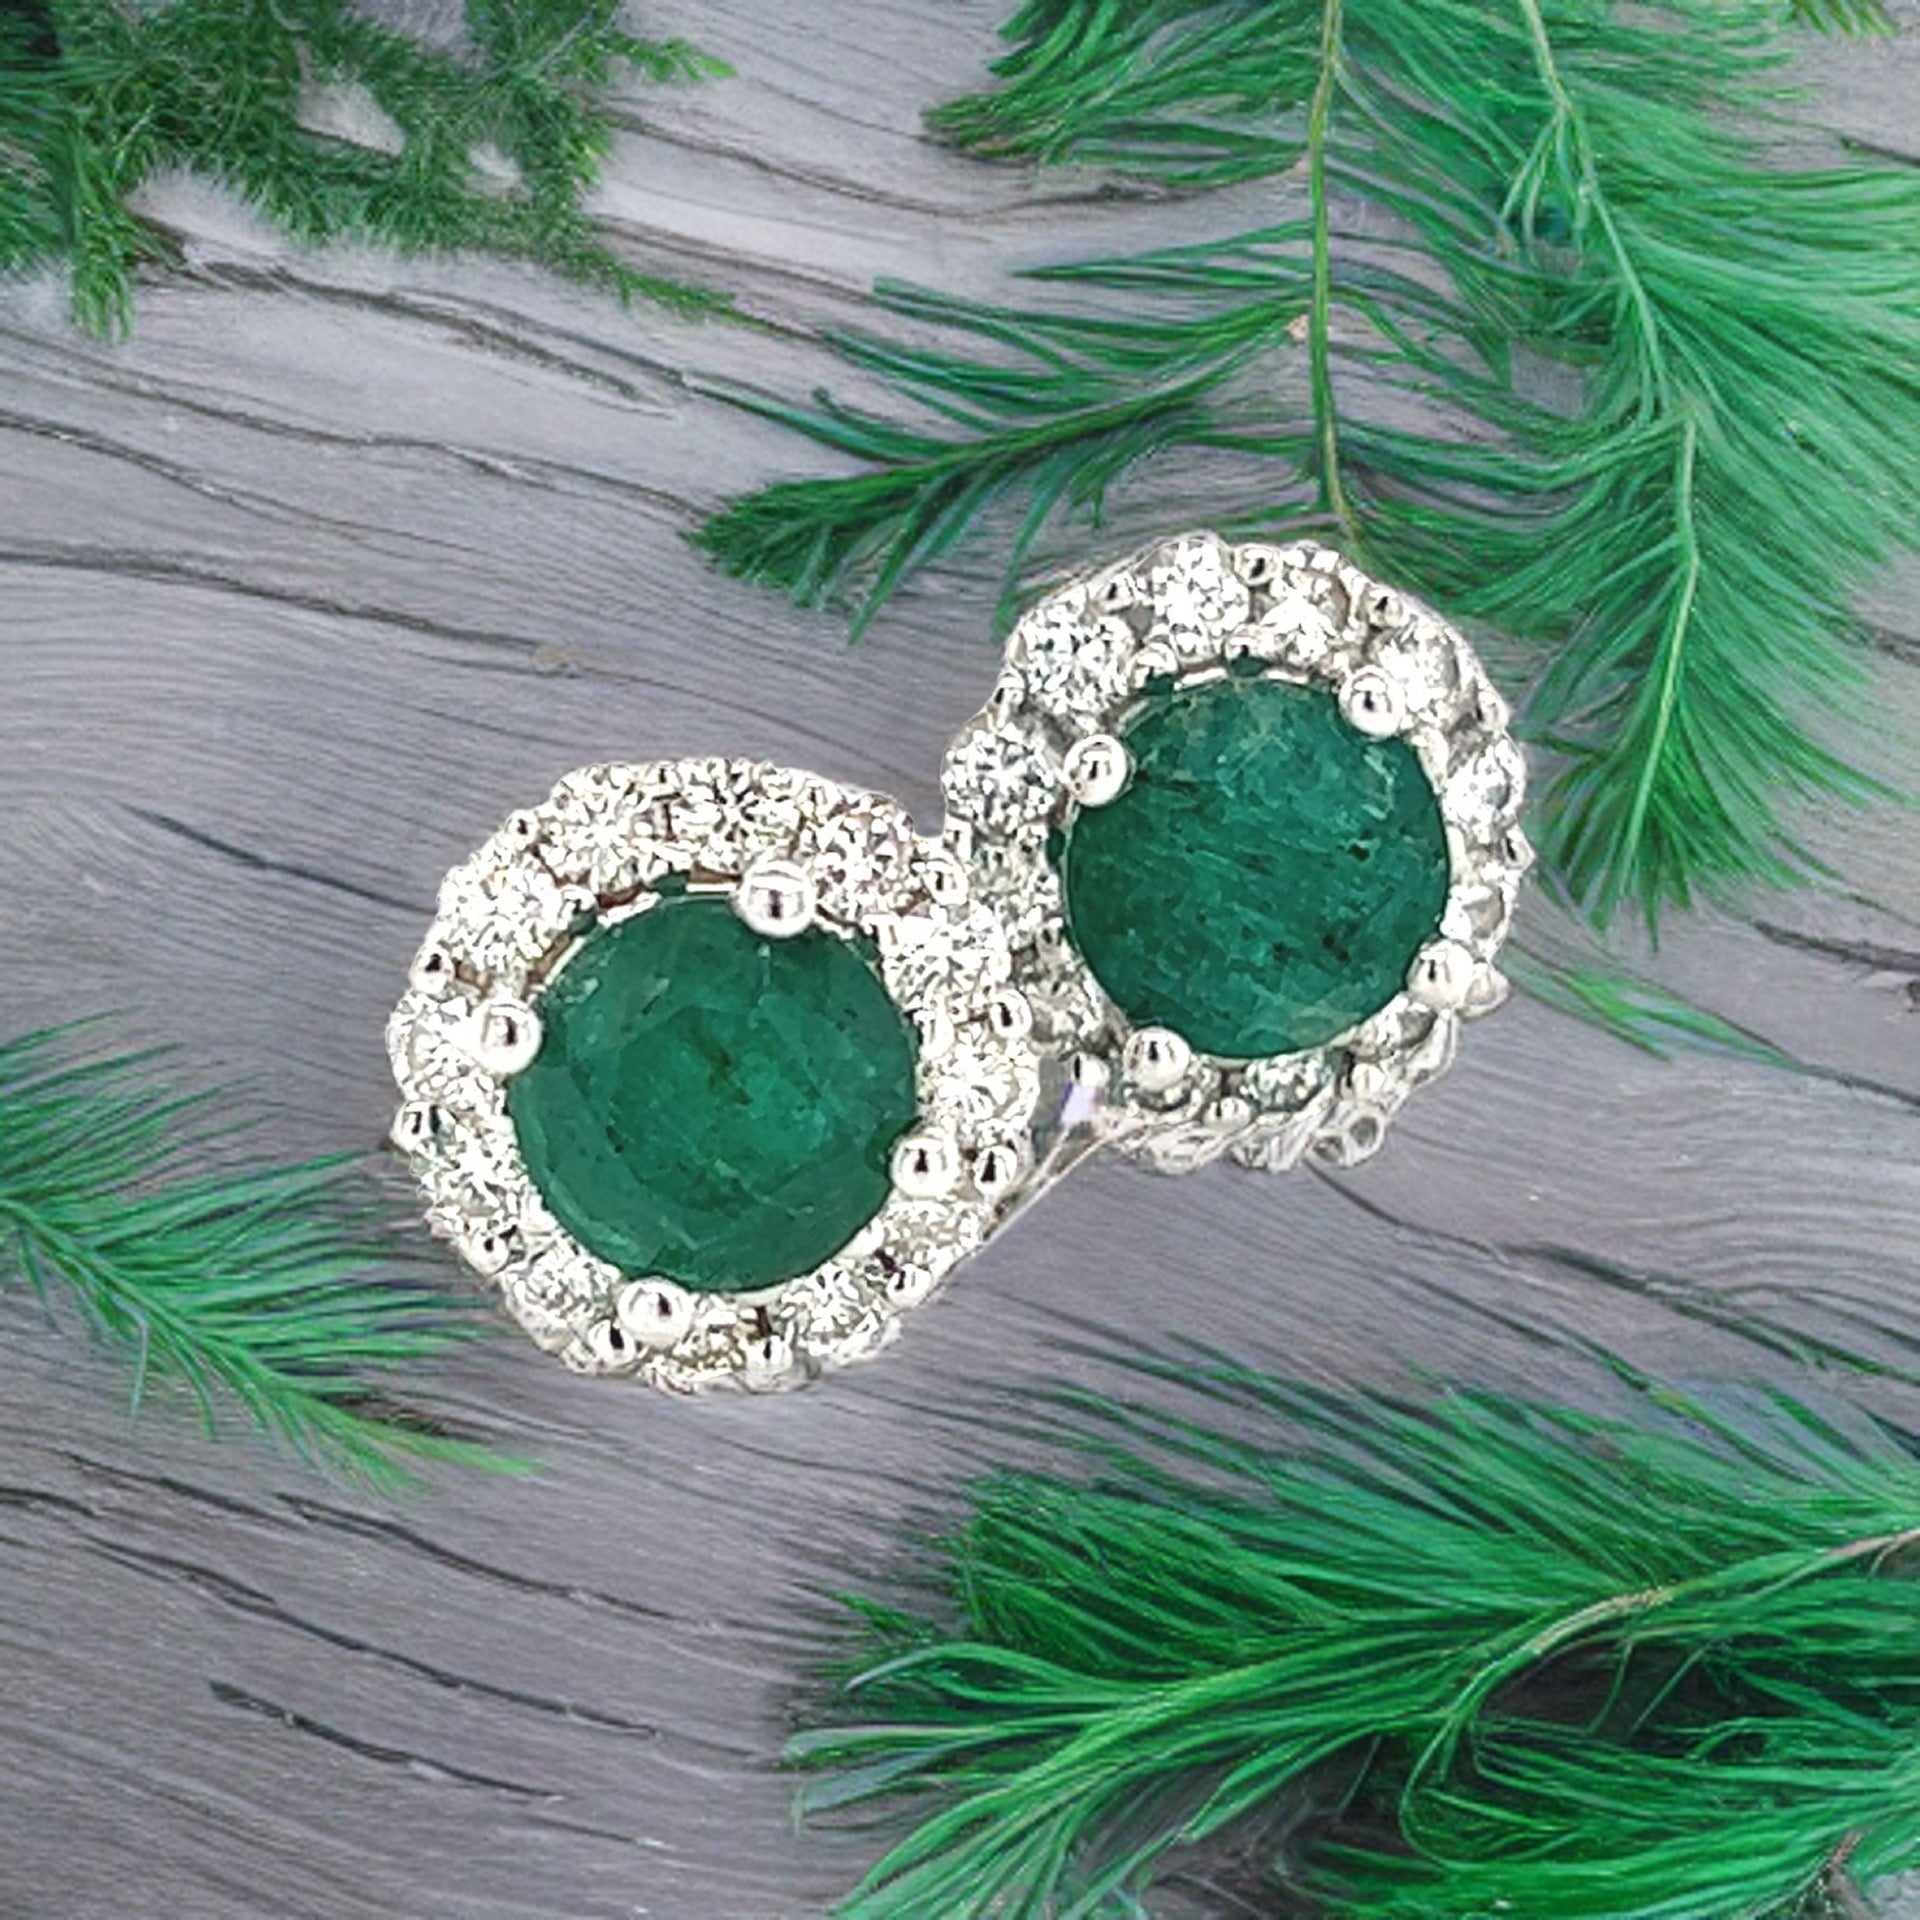 Natural Emerald Diamond Earrings 14k Gold 3.02 TCW Certified $5,490 211182 - Certified Fine Jewelry